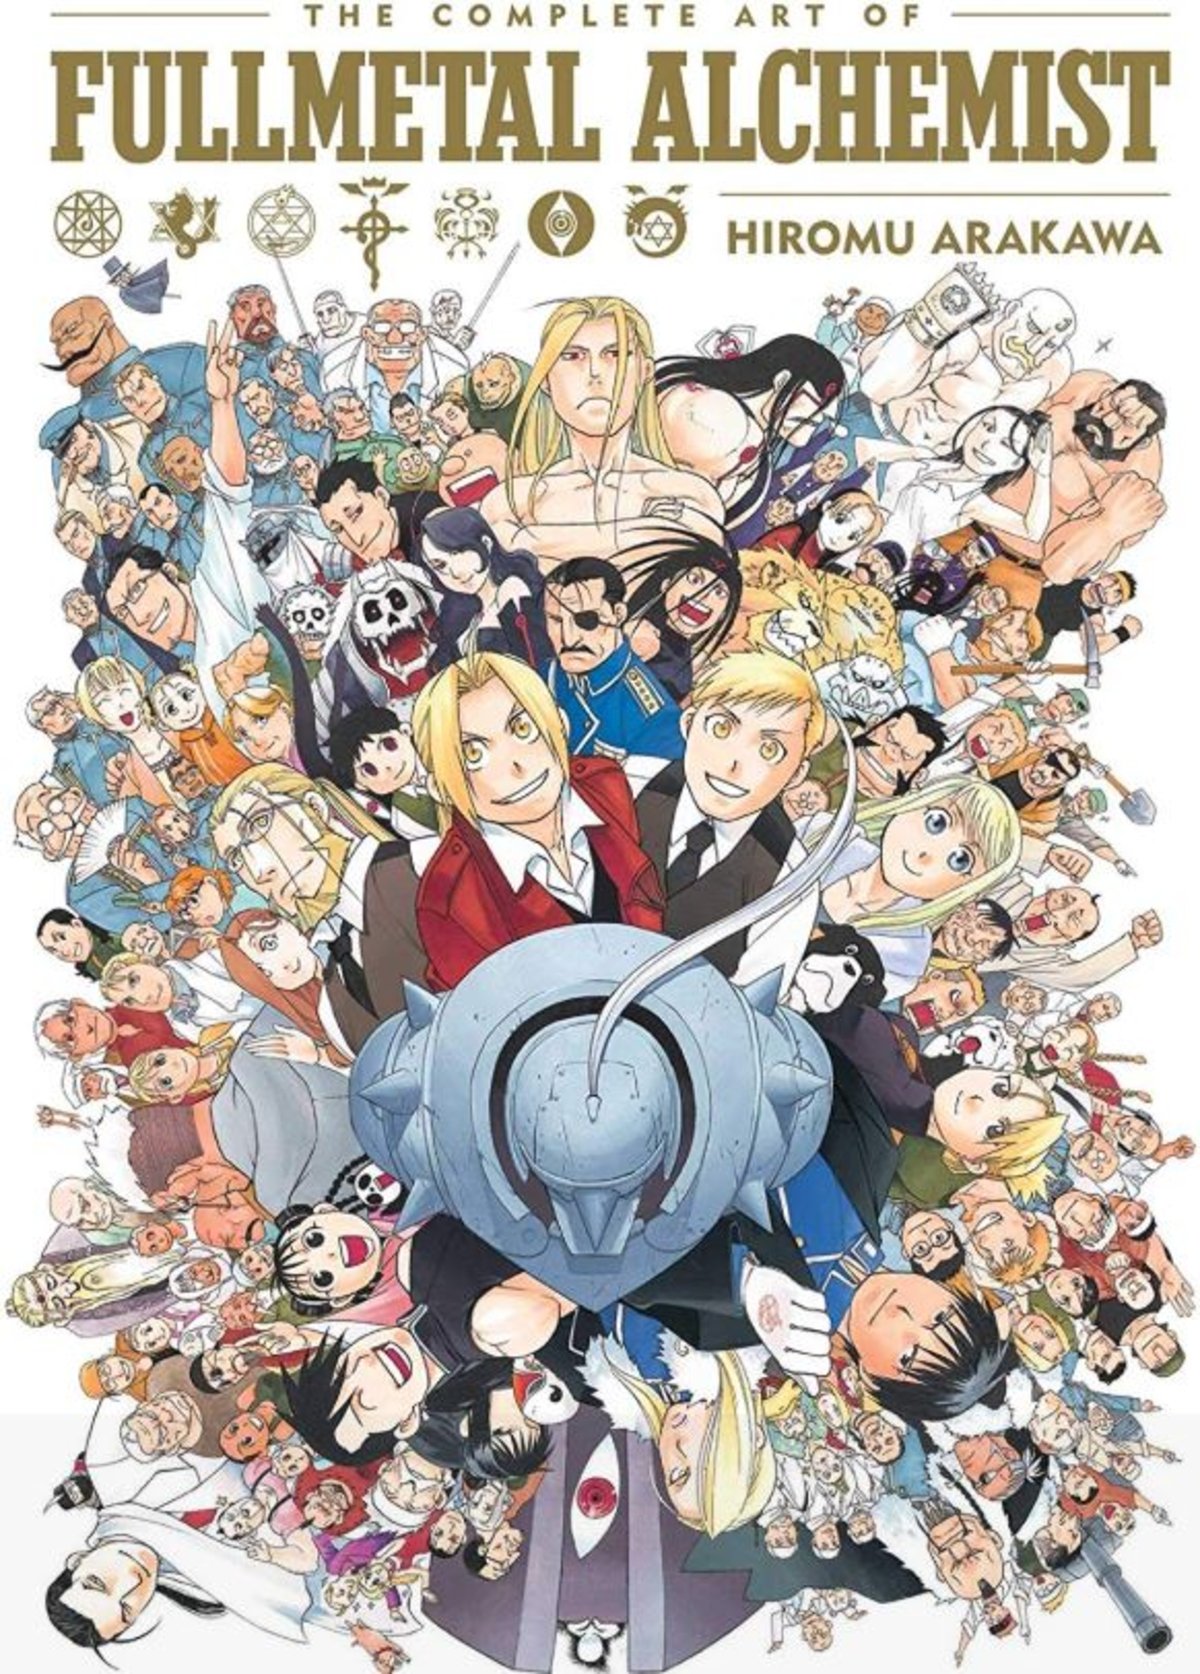 El libro de arte más completo de Fullmetal Alchemist ya tiene fecha, saldrá el 13 de noviembre